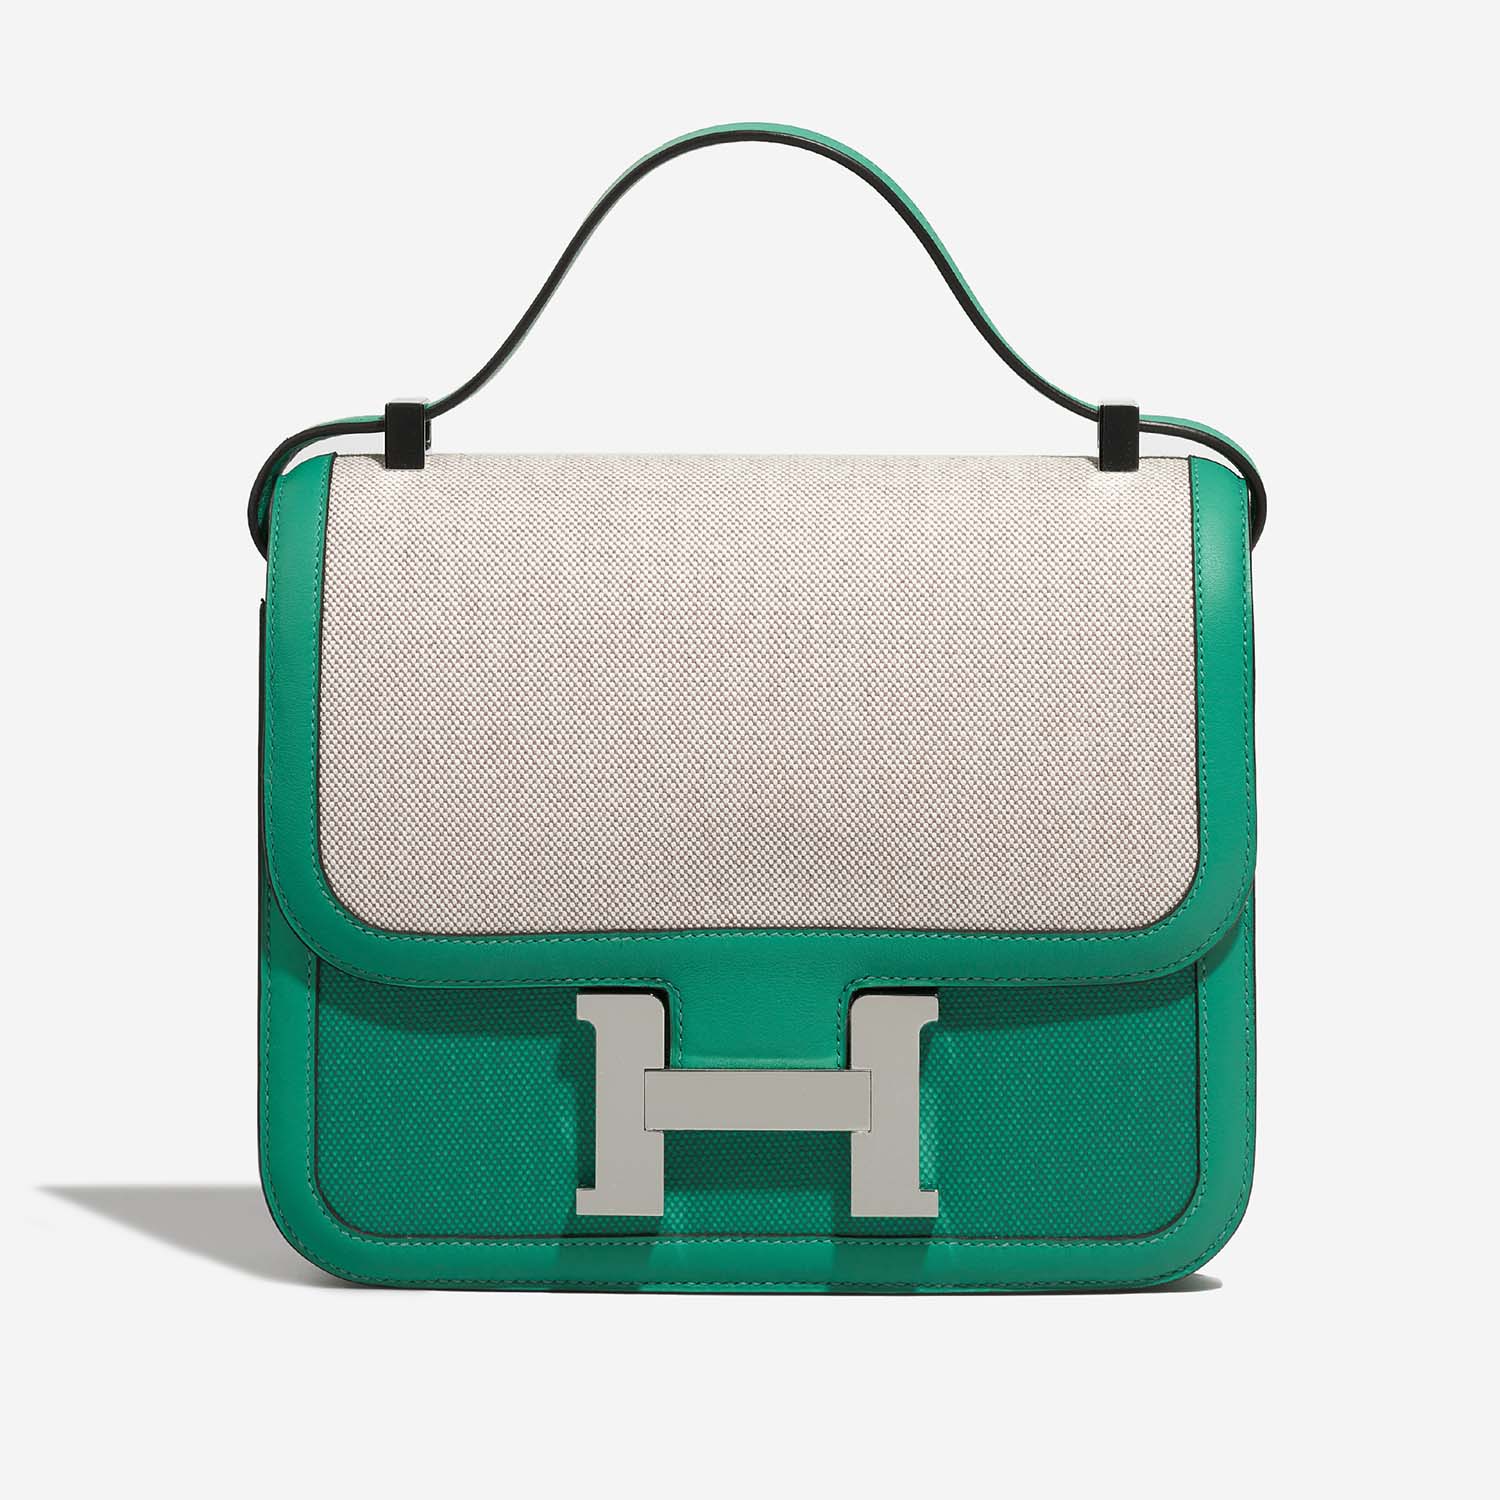 Hermès Constance 24 VertJade Front | Verkaufen Sie Ihre Designer-Tasche auf Saclab.com